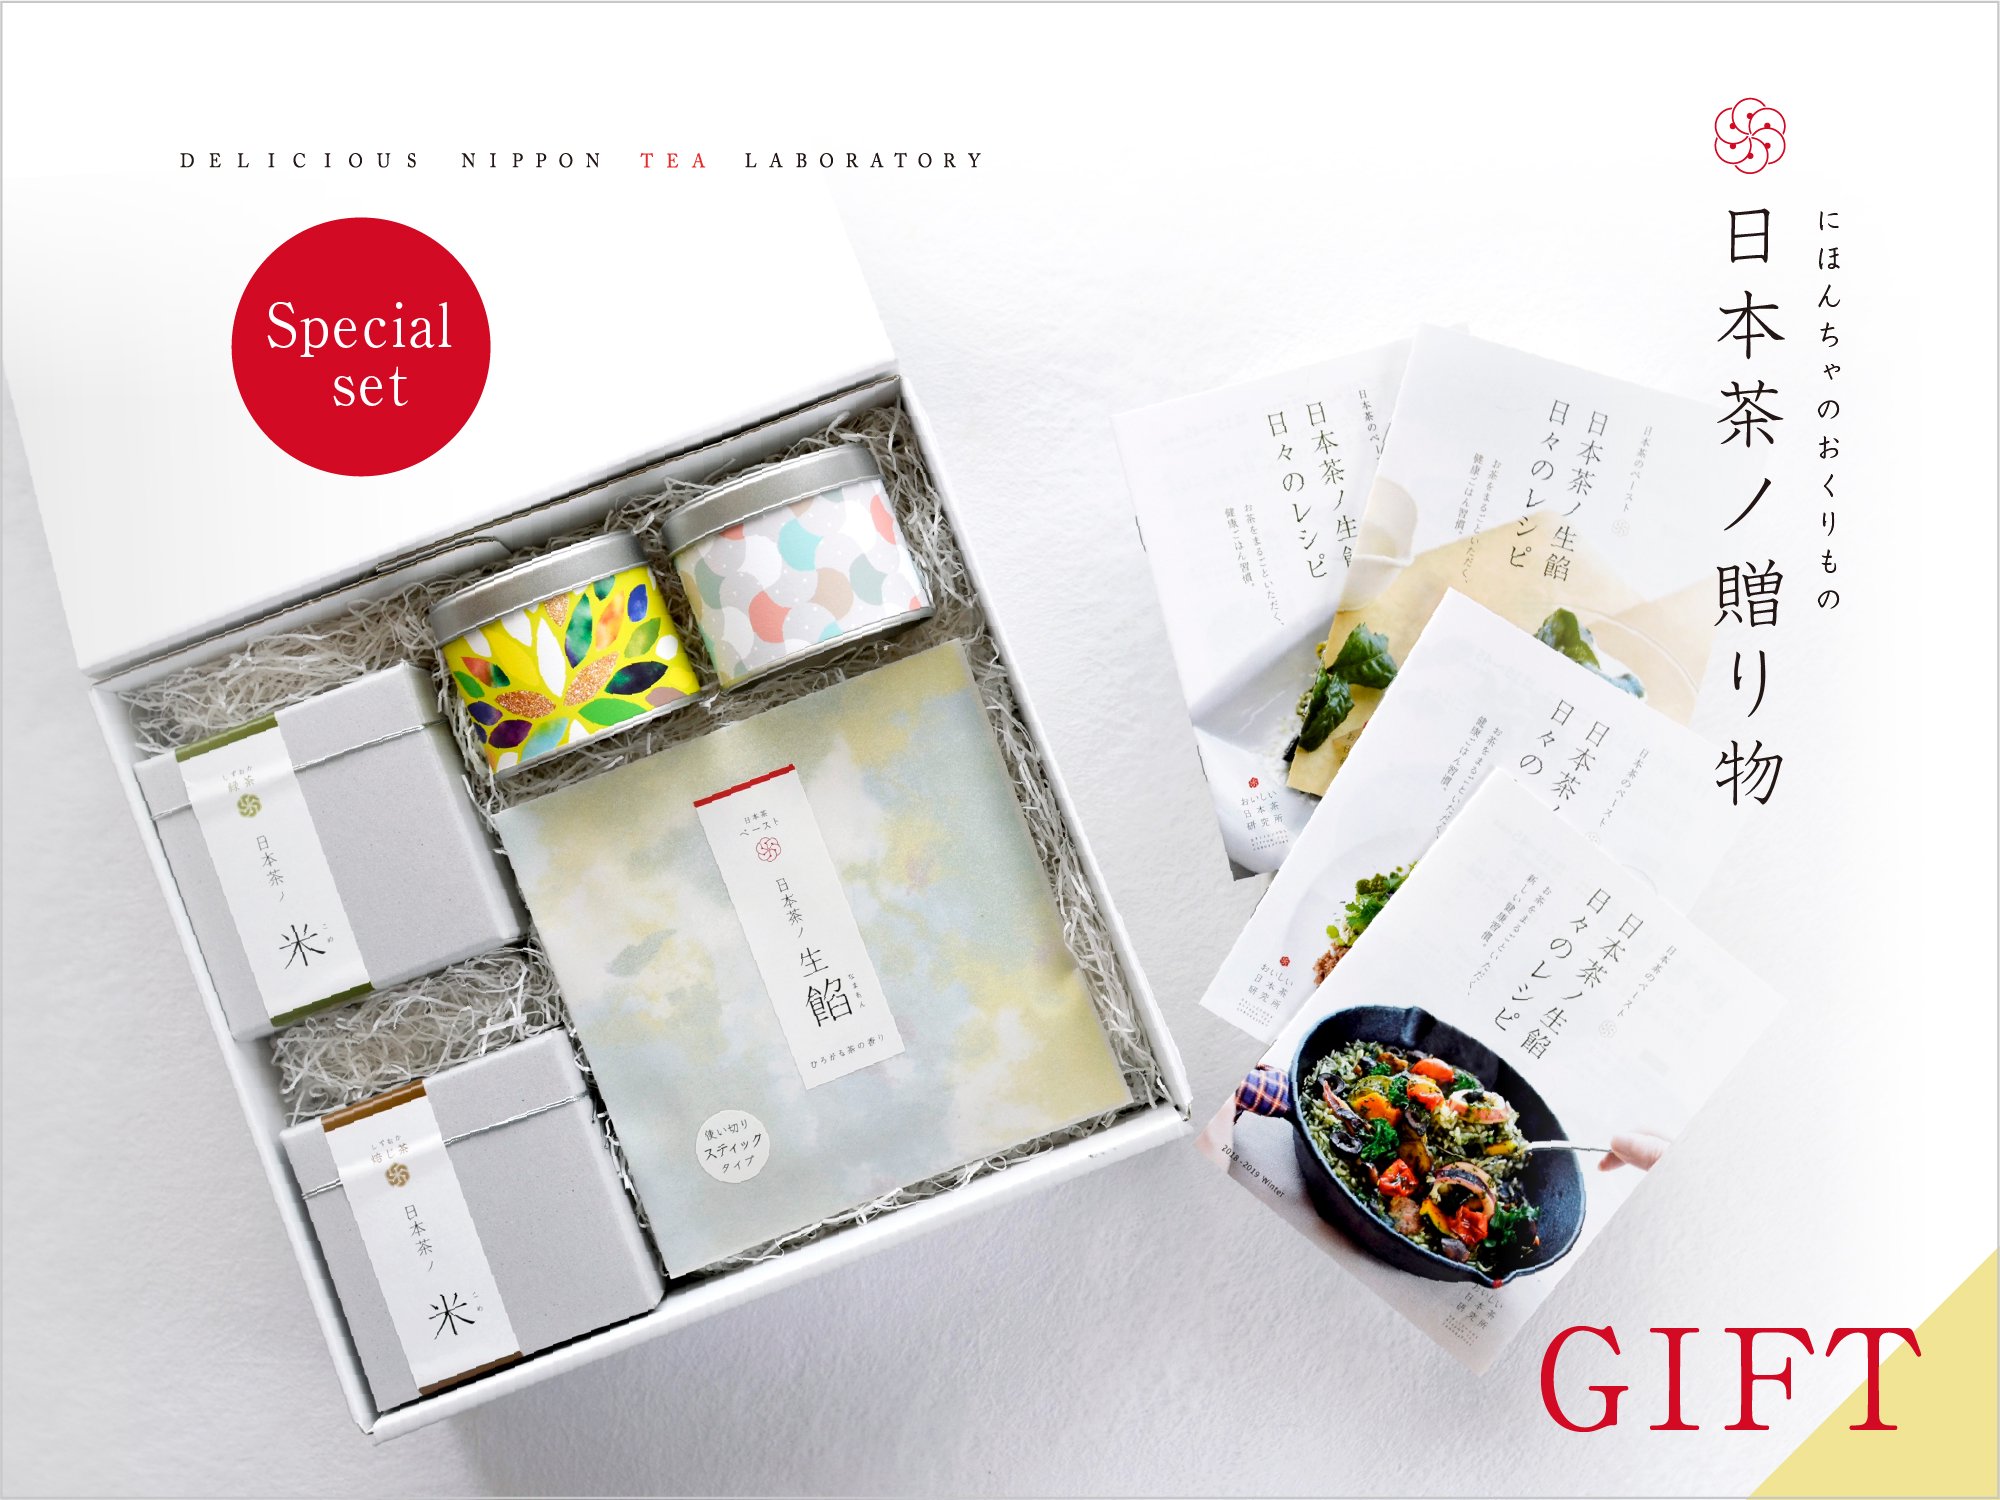 日本ノ茶葉「にほんの茶葉の贈り物」お茶の贈答ギフト。おいしい日本茶研究所よりお届けします。